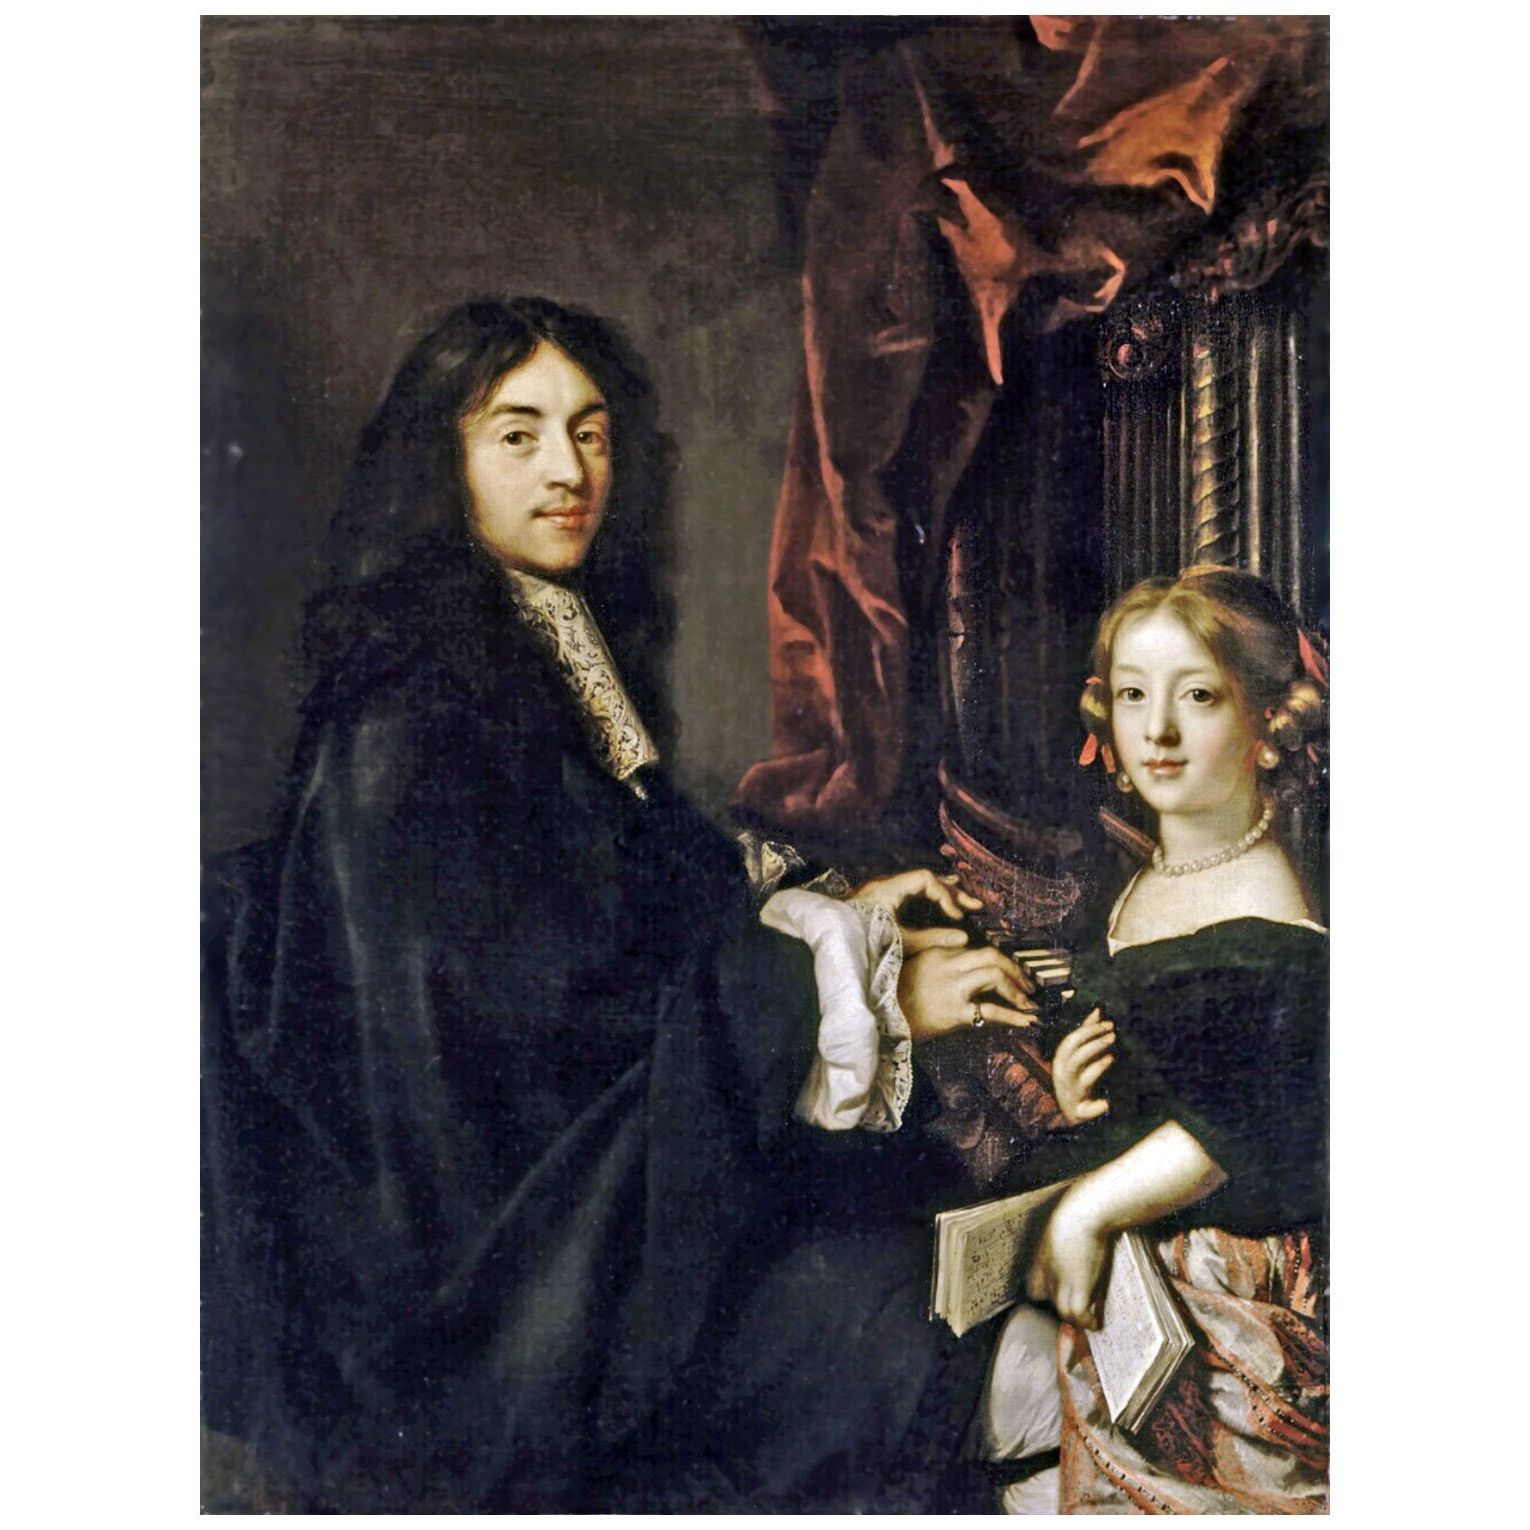 Claude Lefebvre. Charles Couperin et la fille du peintre. 1665. Château de Versailles